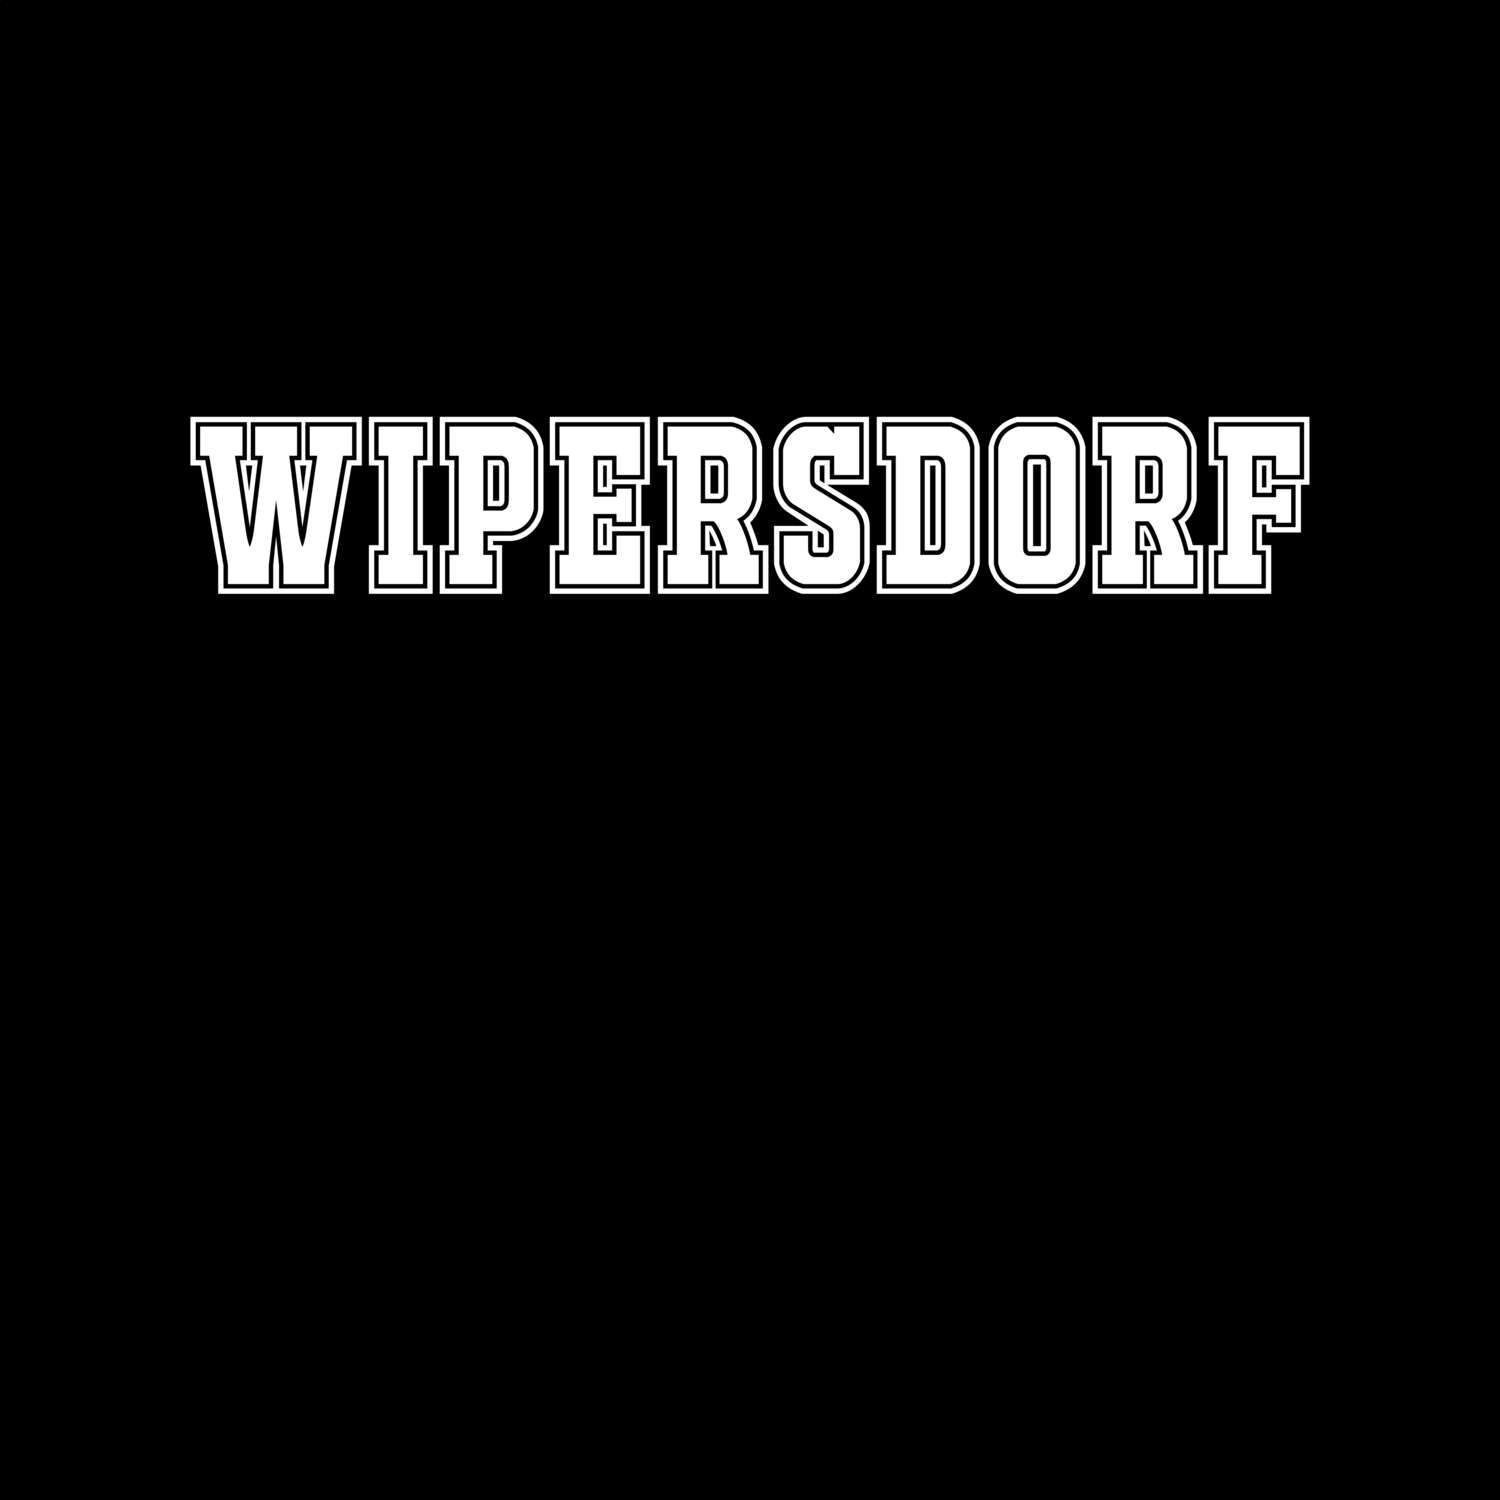 Wipersdorf T-Shirt »Classic«